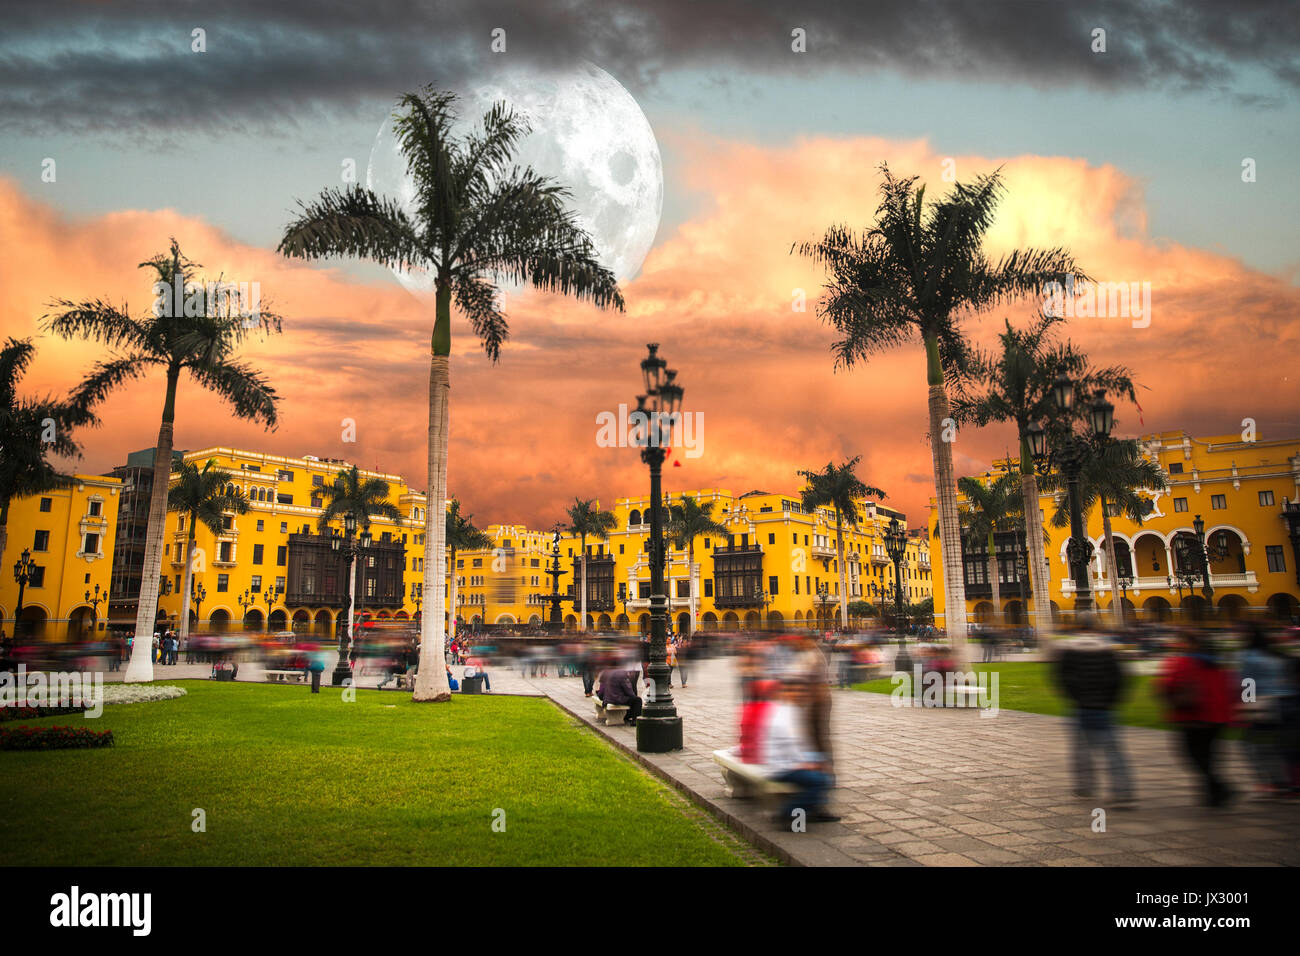 Lima est une ville sur la côte pacifique de l'Amérique du Sud, la capitale de la République du Pérou. Banque D'Images